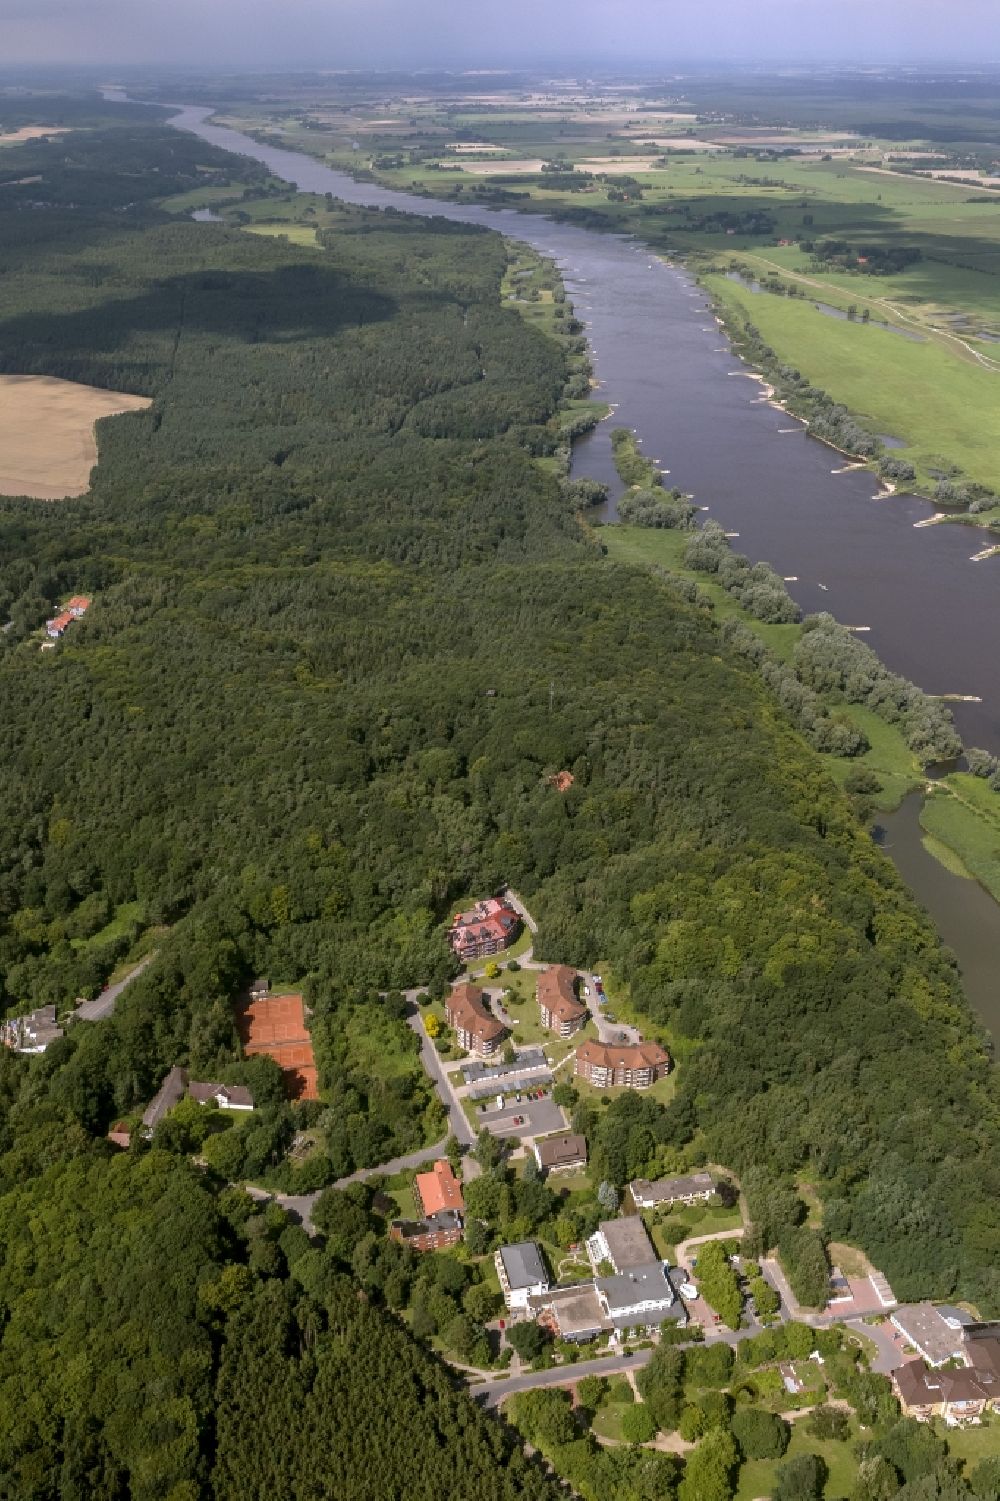 Aerial photograph Hitzacker - City view of Hitzacker in Lower Saxony